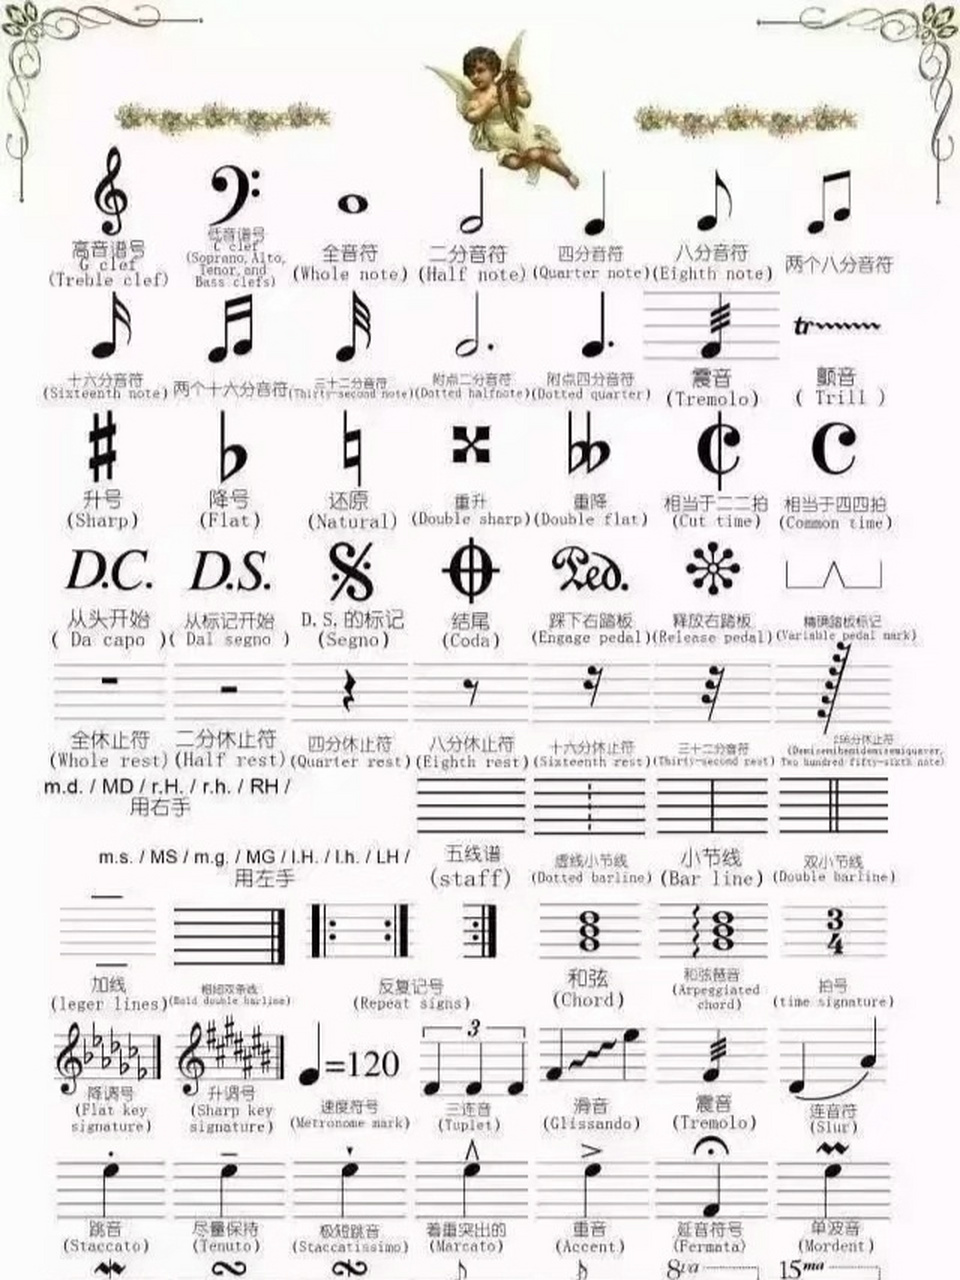 小提琴乐谱常见符号图片